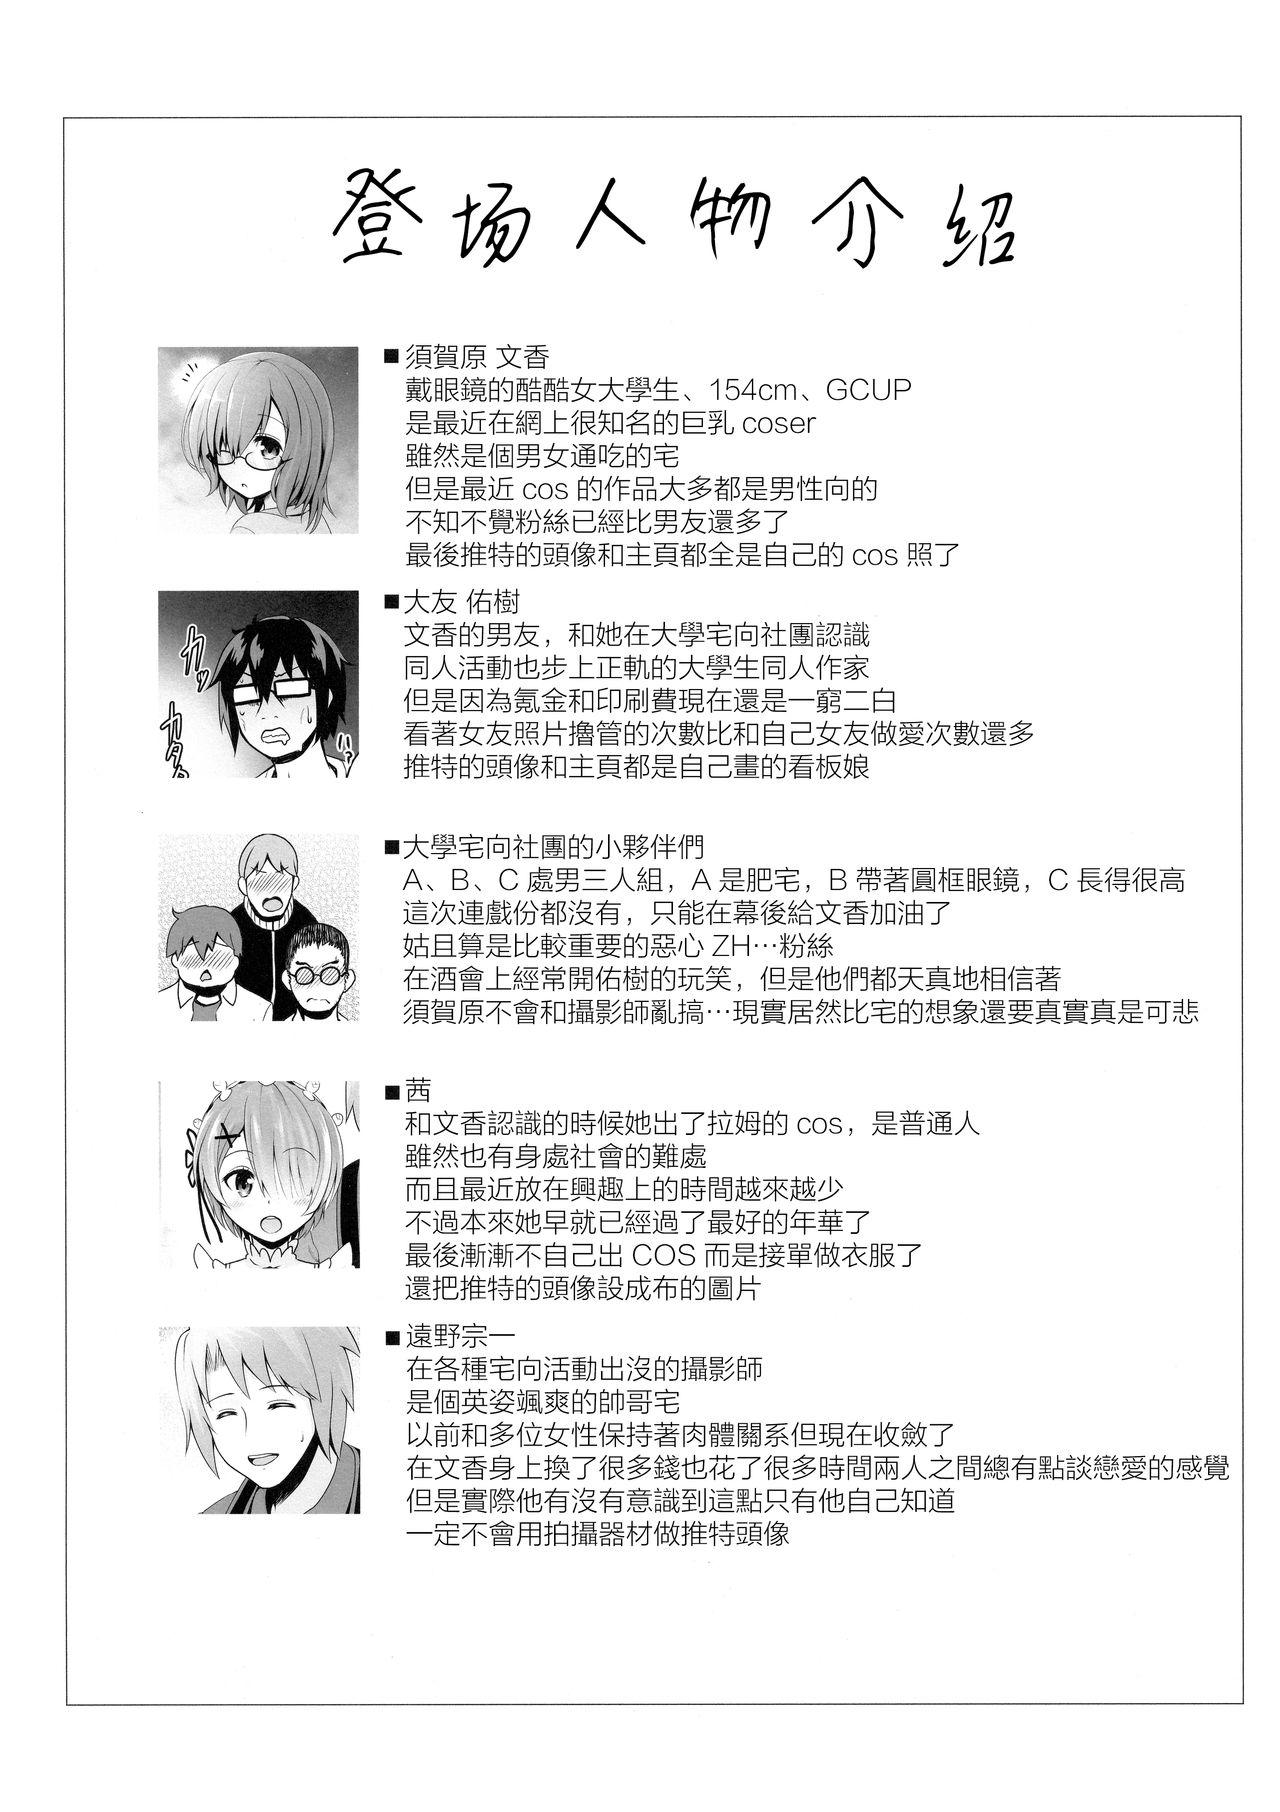 Sixtynine Tennen Kamichichi Shirouto Cosplayer Nangoku Ritou Mizugi Loca Satsuei - Kantai collection Fate grand order Closeups - Page 3